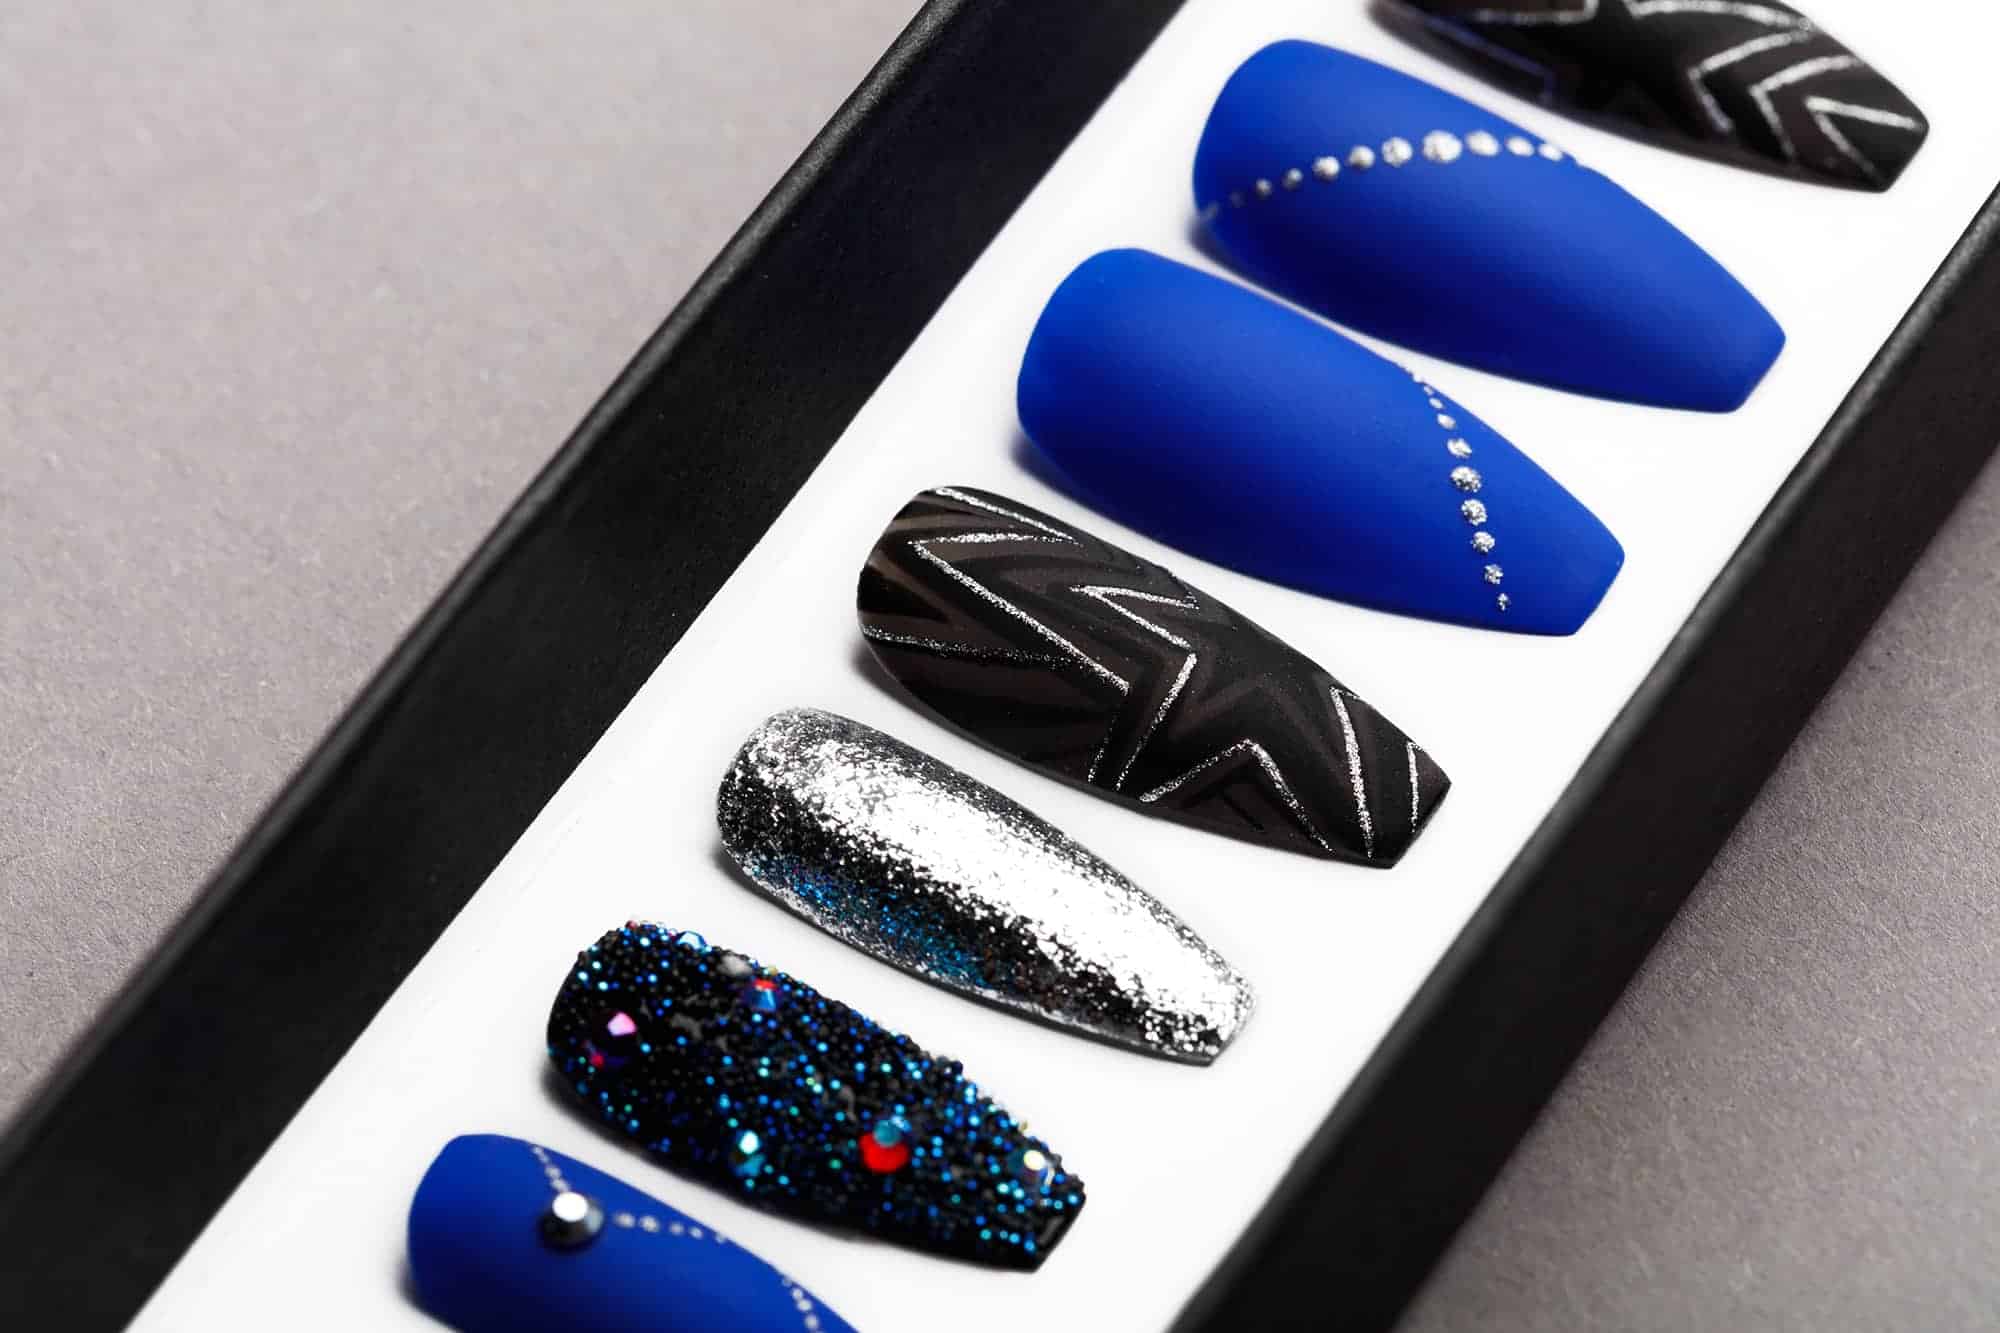 Ultramarine Star Press on Nails with Swarovski Crystals | Unicorn Nails | Hand painted Nail Art | Fake Nails | False Nails | Celebrity Nails